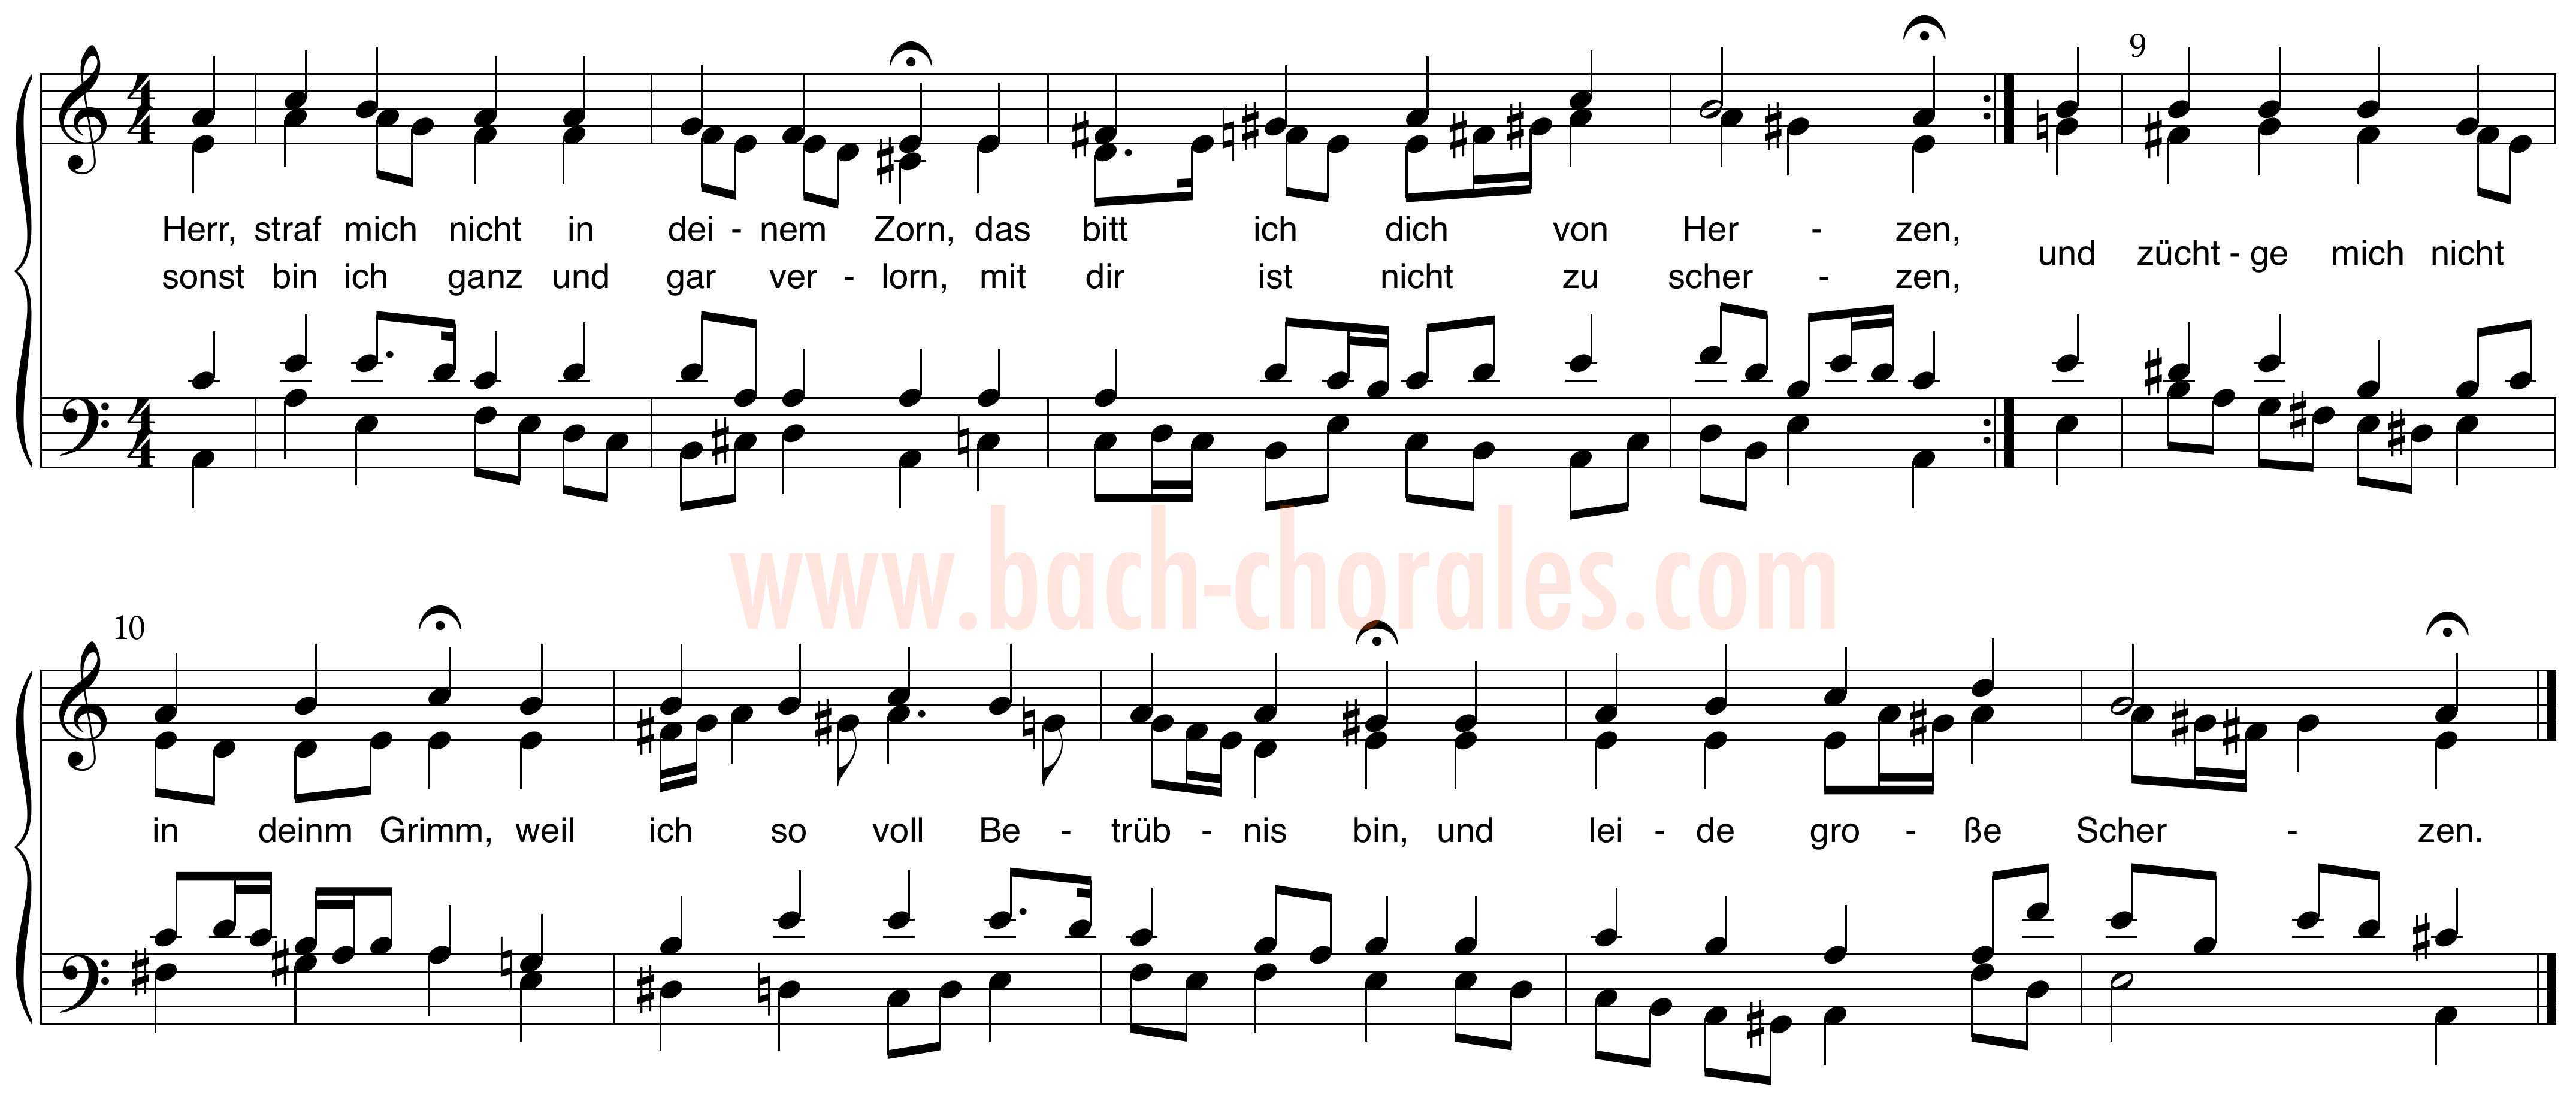 notenbeeld BWV 338 op https://www.bach-chorales.com/